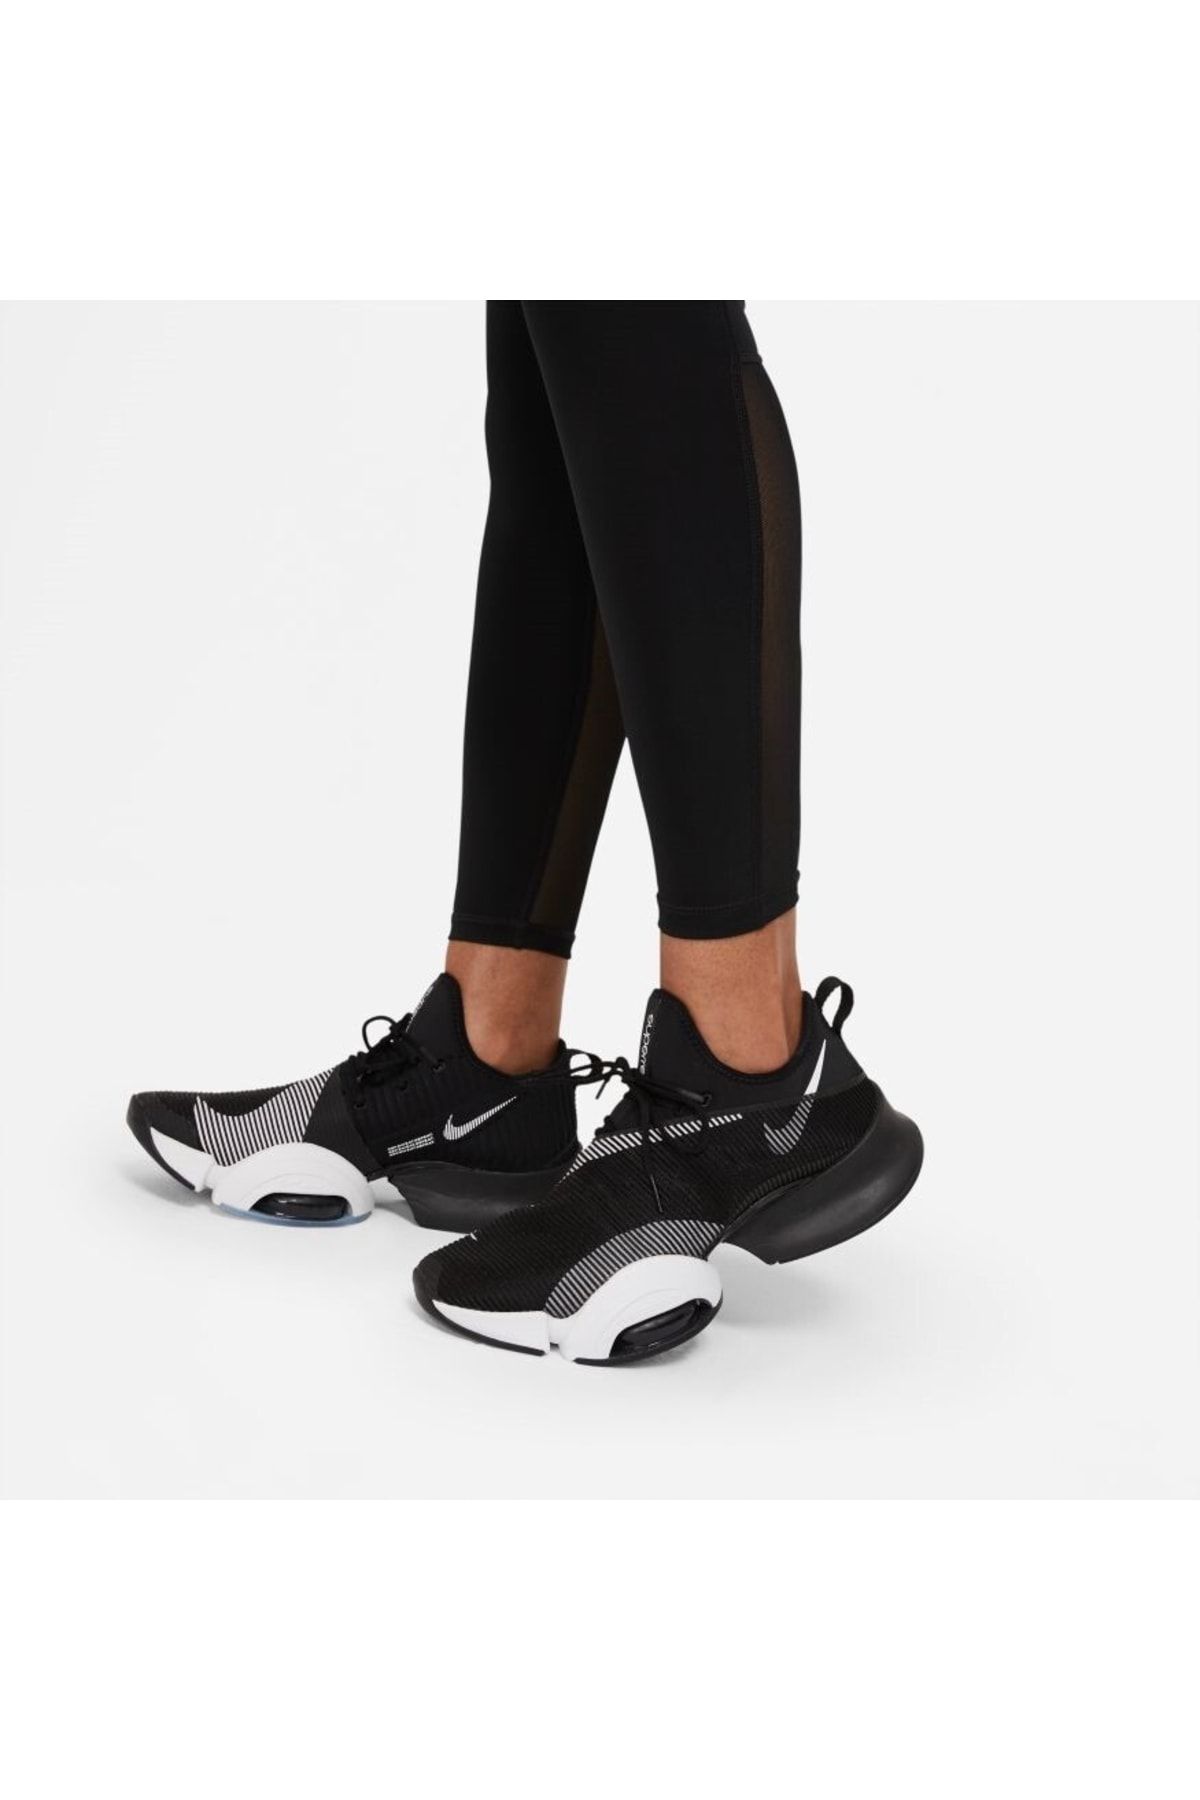 Nike Pro 365 Kadın Tayt Fiyatı, Yorumları - Trendyol